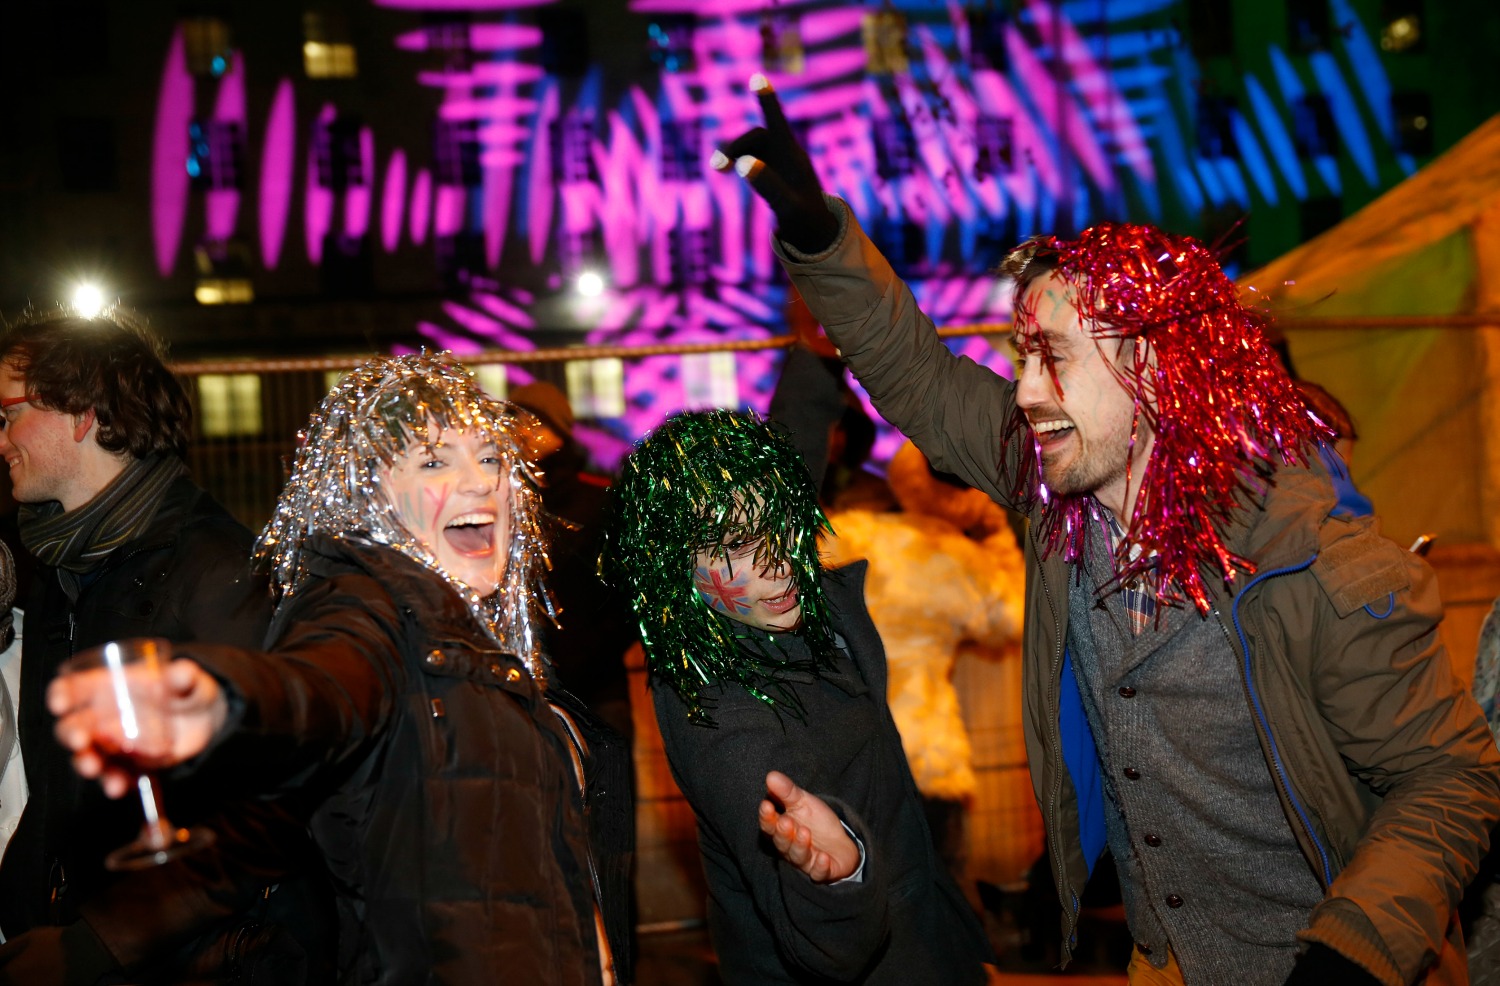 Hacer mucho ruido en Nochevieja mantiene a los malos espíritus alejados. (Foto: Suzanne Plunkett / Reuters)